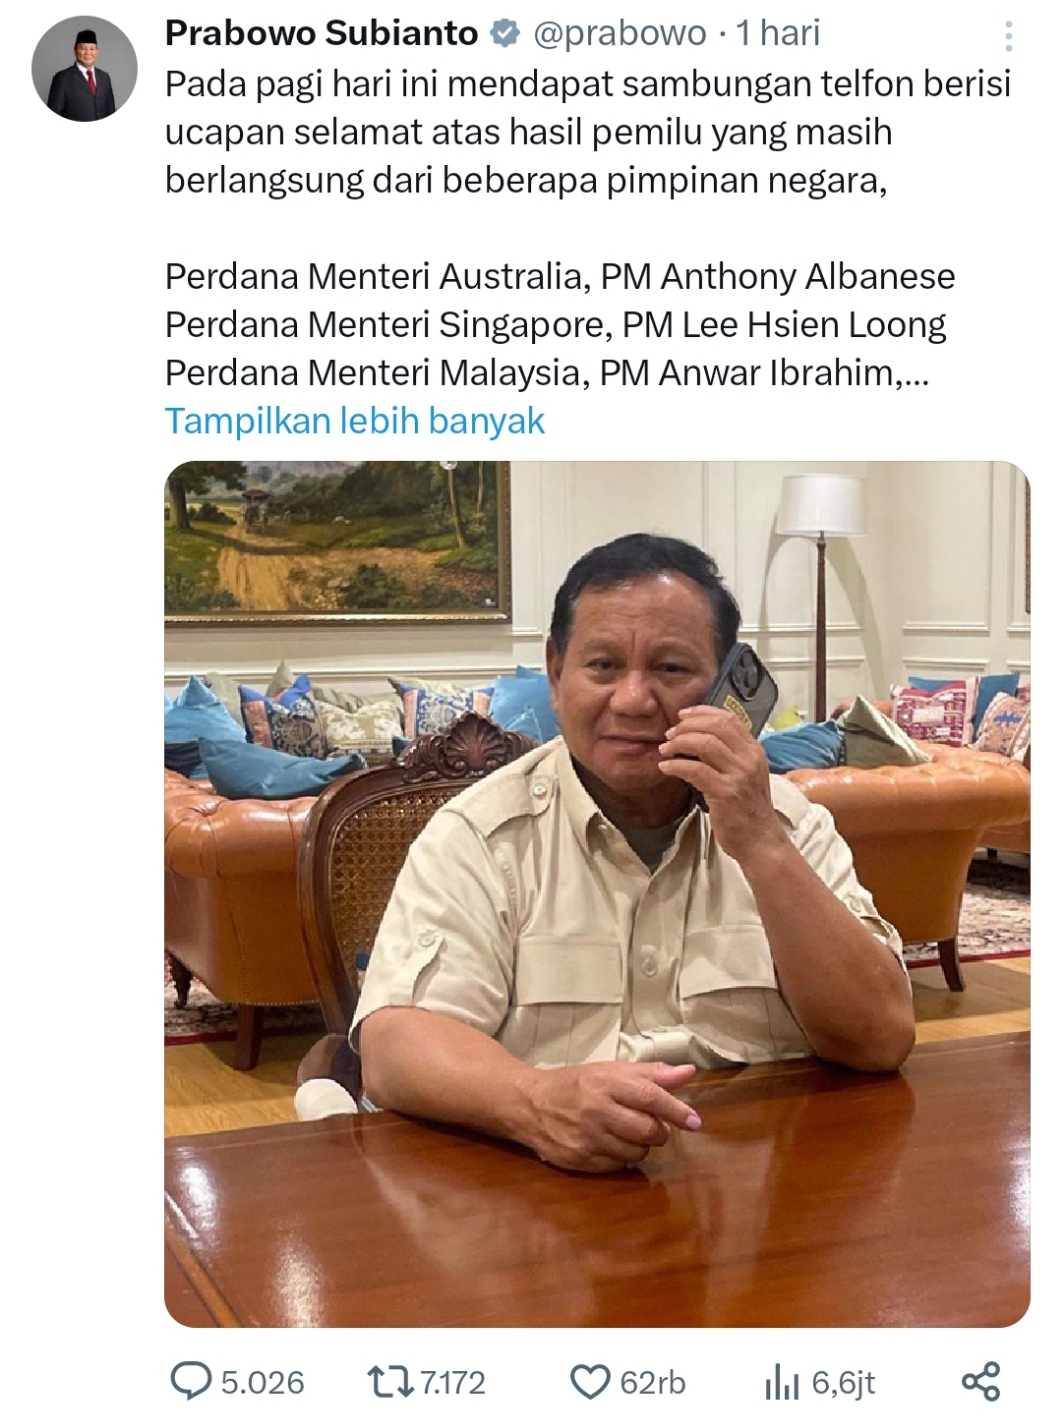 Unggul di Hitungan Cepat, Prabowo Mengaku Dapat Banyak Ucapan Selamat dari Beberapa Pimpinan Negara 